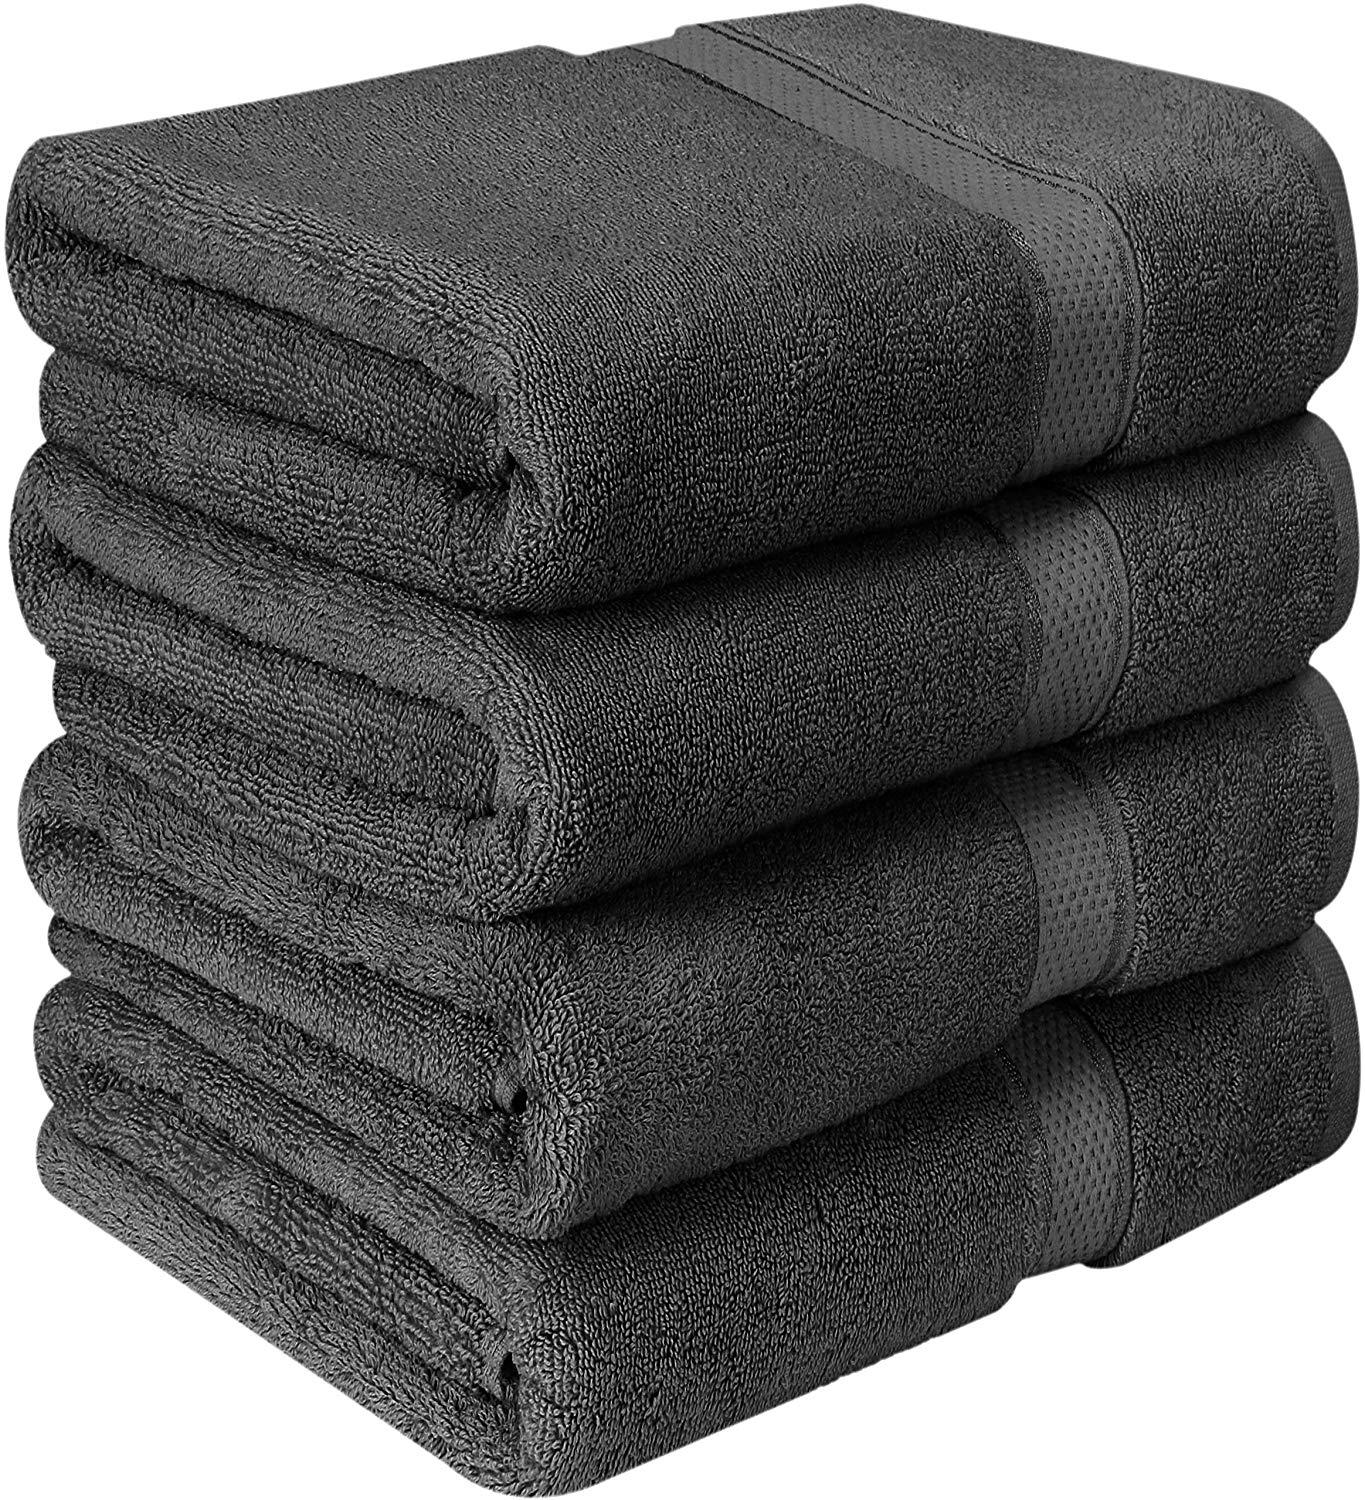 Copy of Bath Towel Set 6 pieces